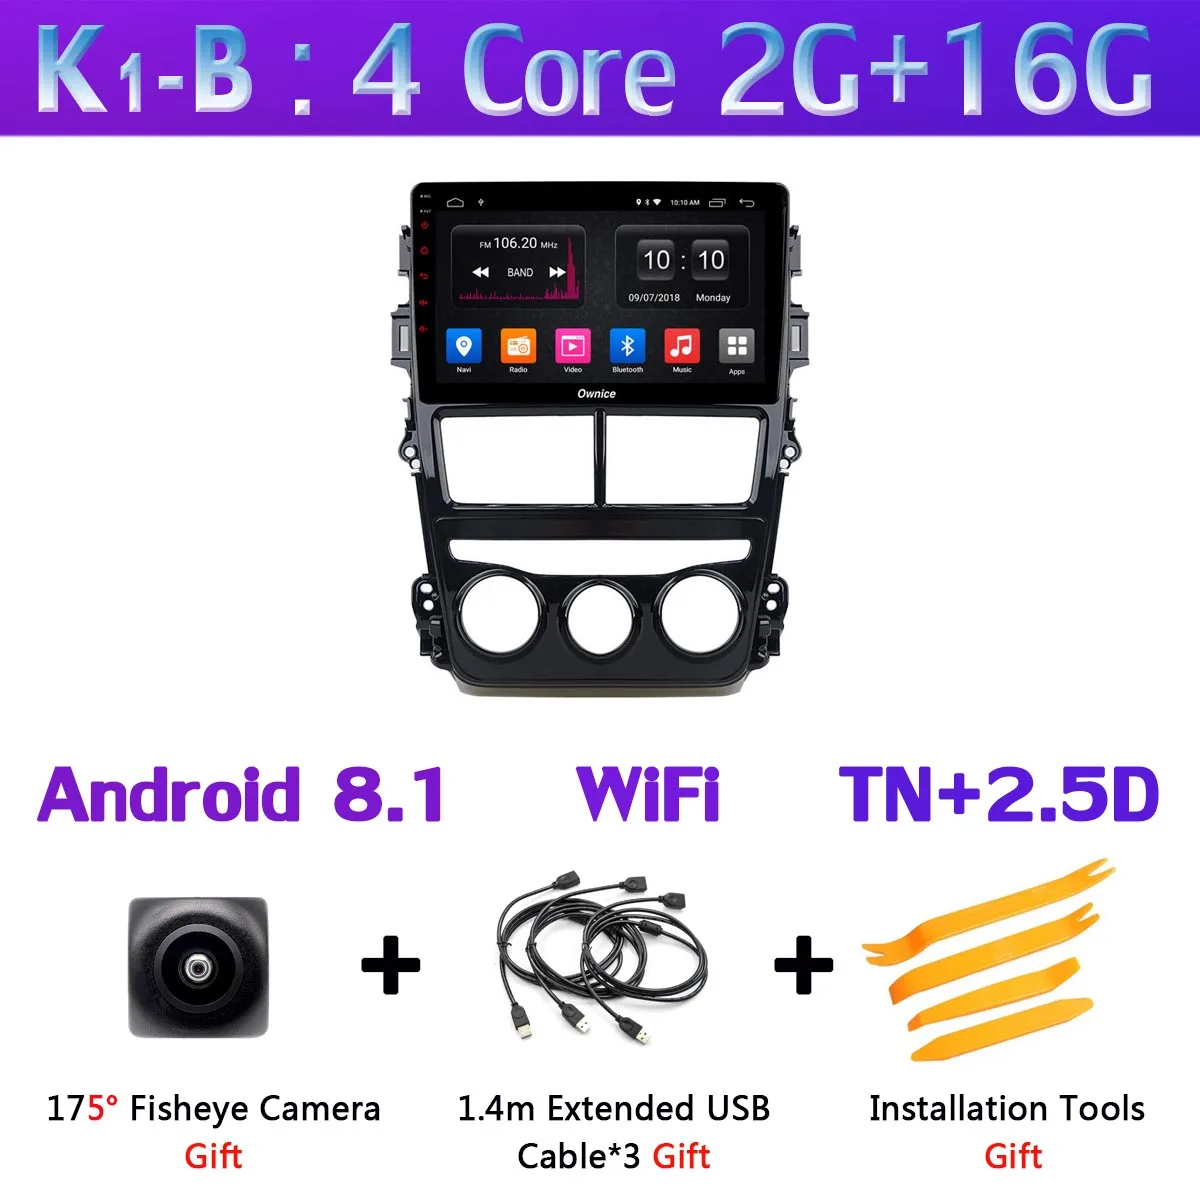 360 ° панорамная камера Android 9,0 4G+ 64G DSP CarPlay автомобильный мультимедийный плеер для Toyota Yaris, Vios MT на gps радио - Цвет: K1-B